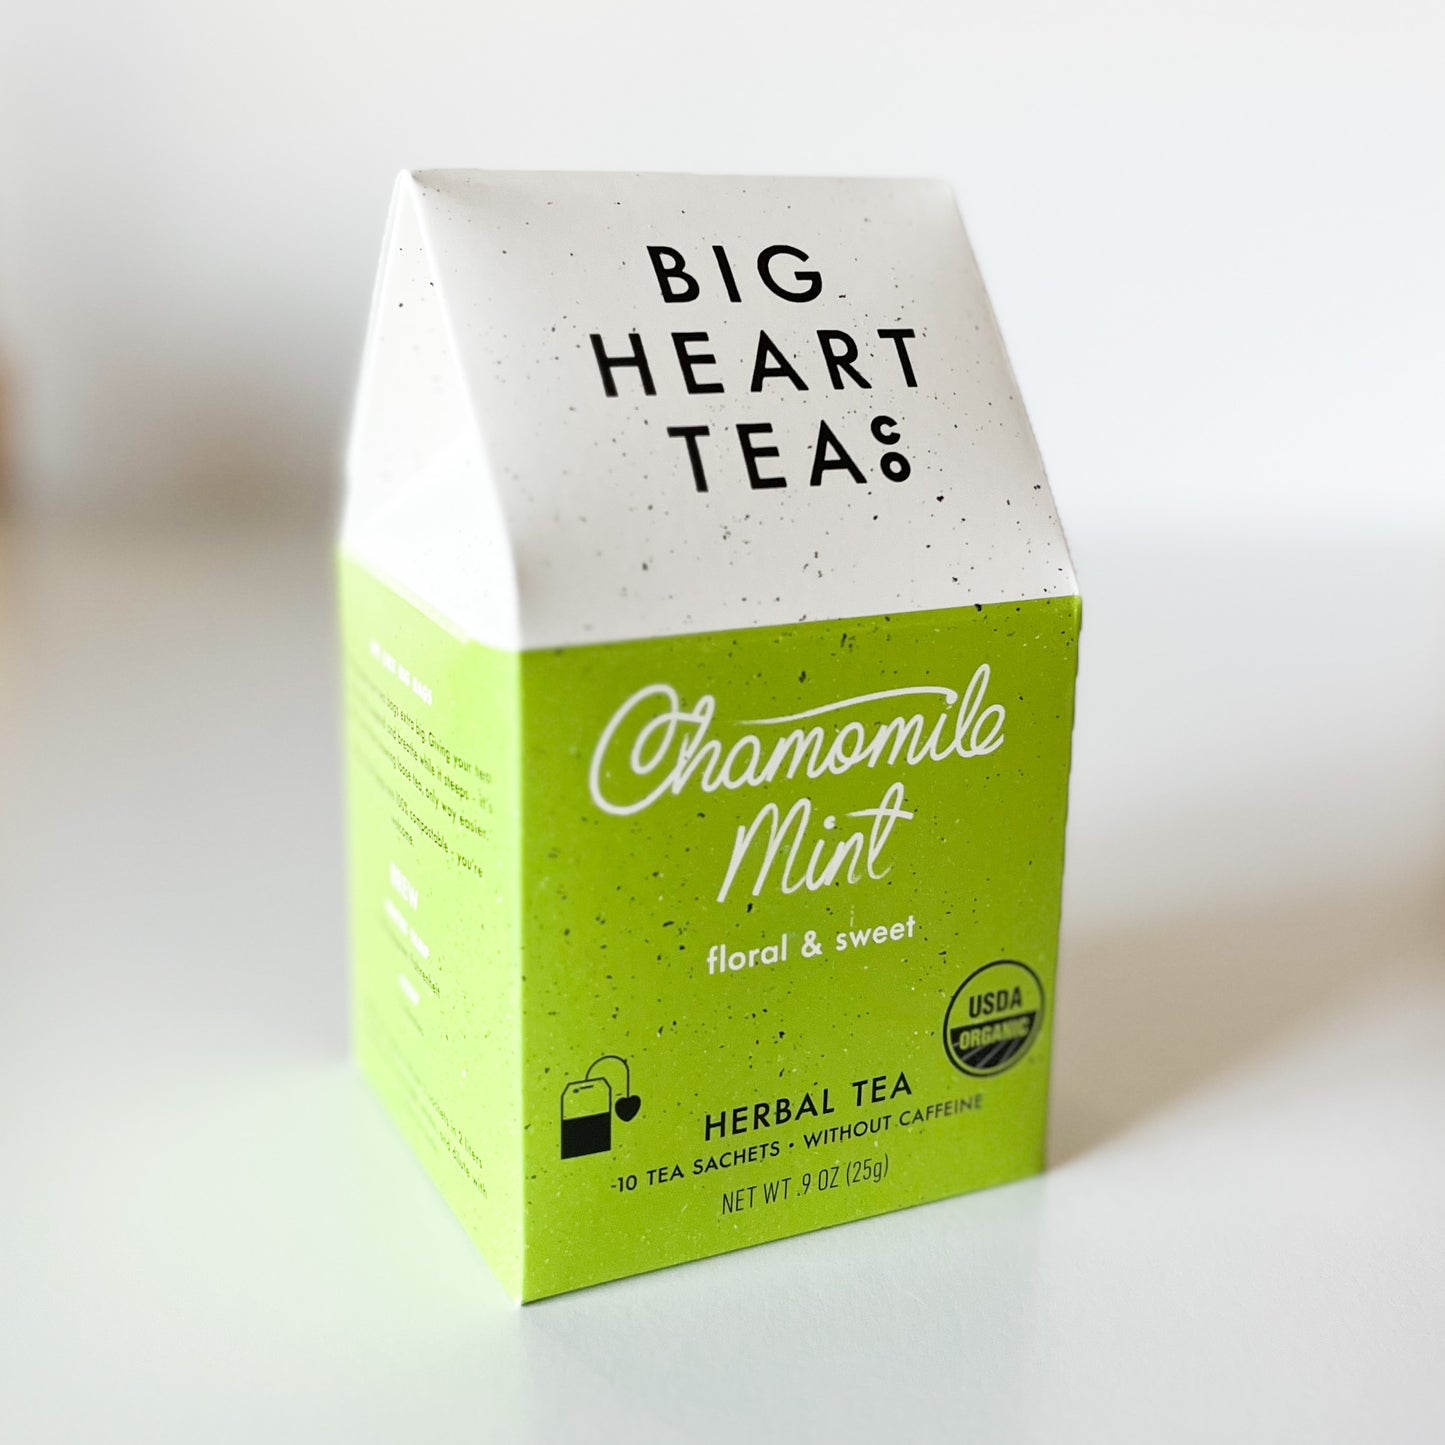 big heart tea co chamomile mint